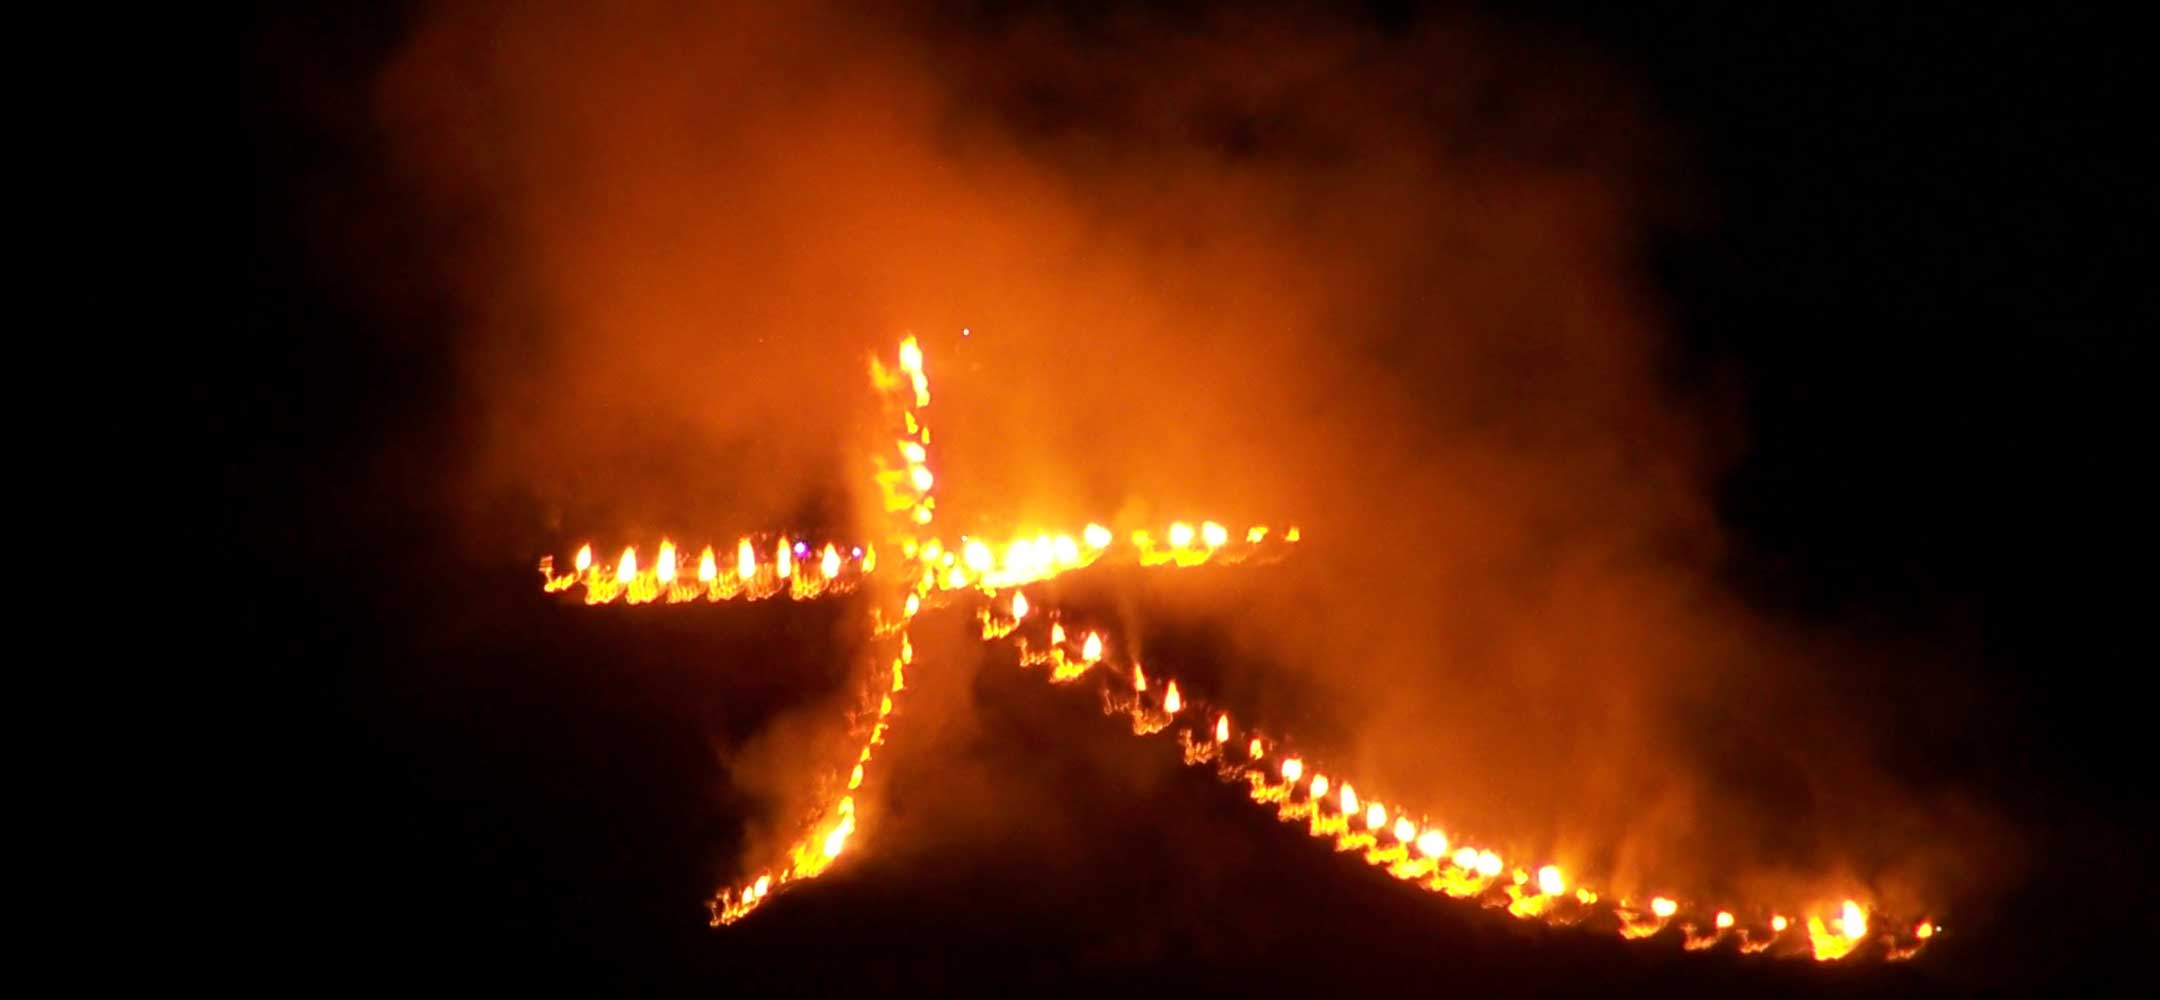 Ideogram ułożony z wielkich ognisk (fot. ze strony insidejapantours.